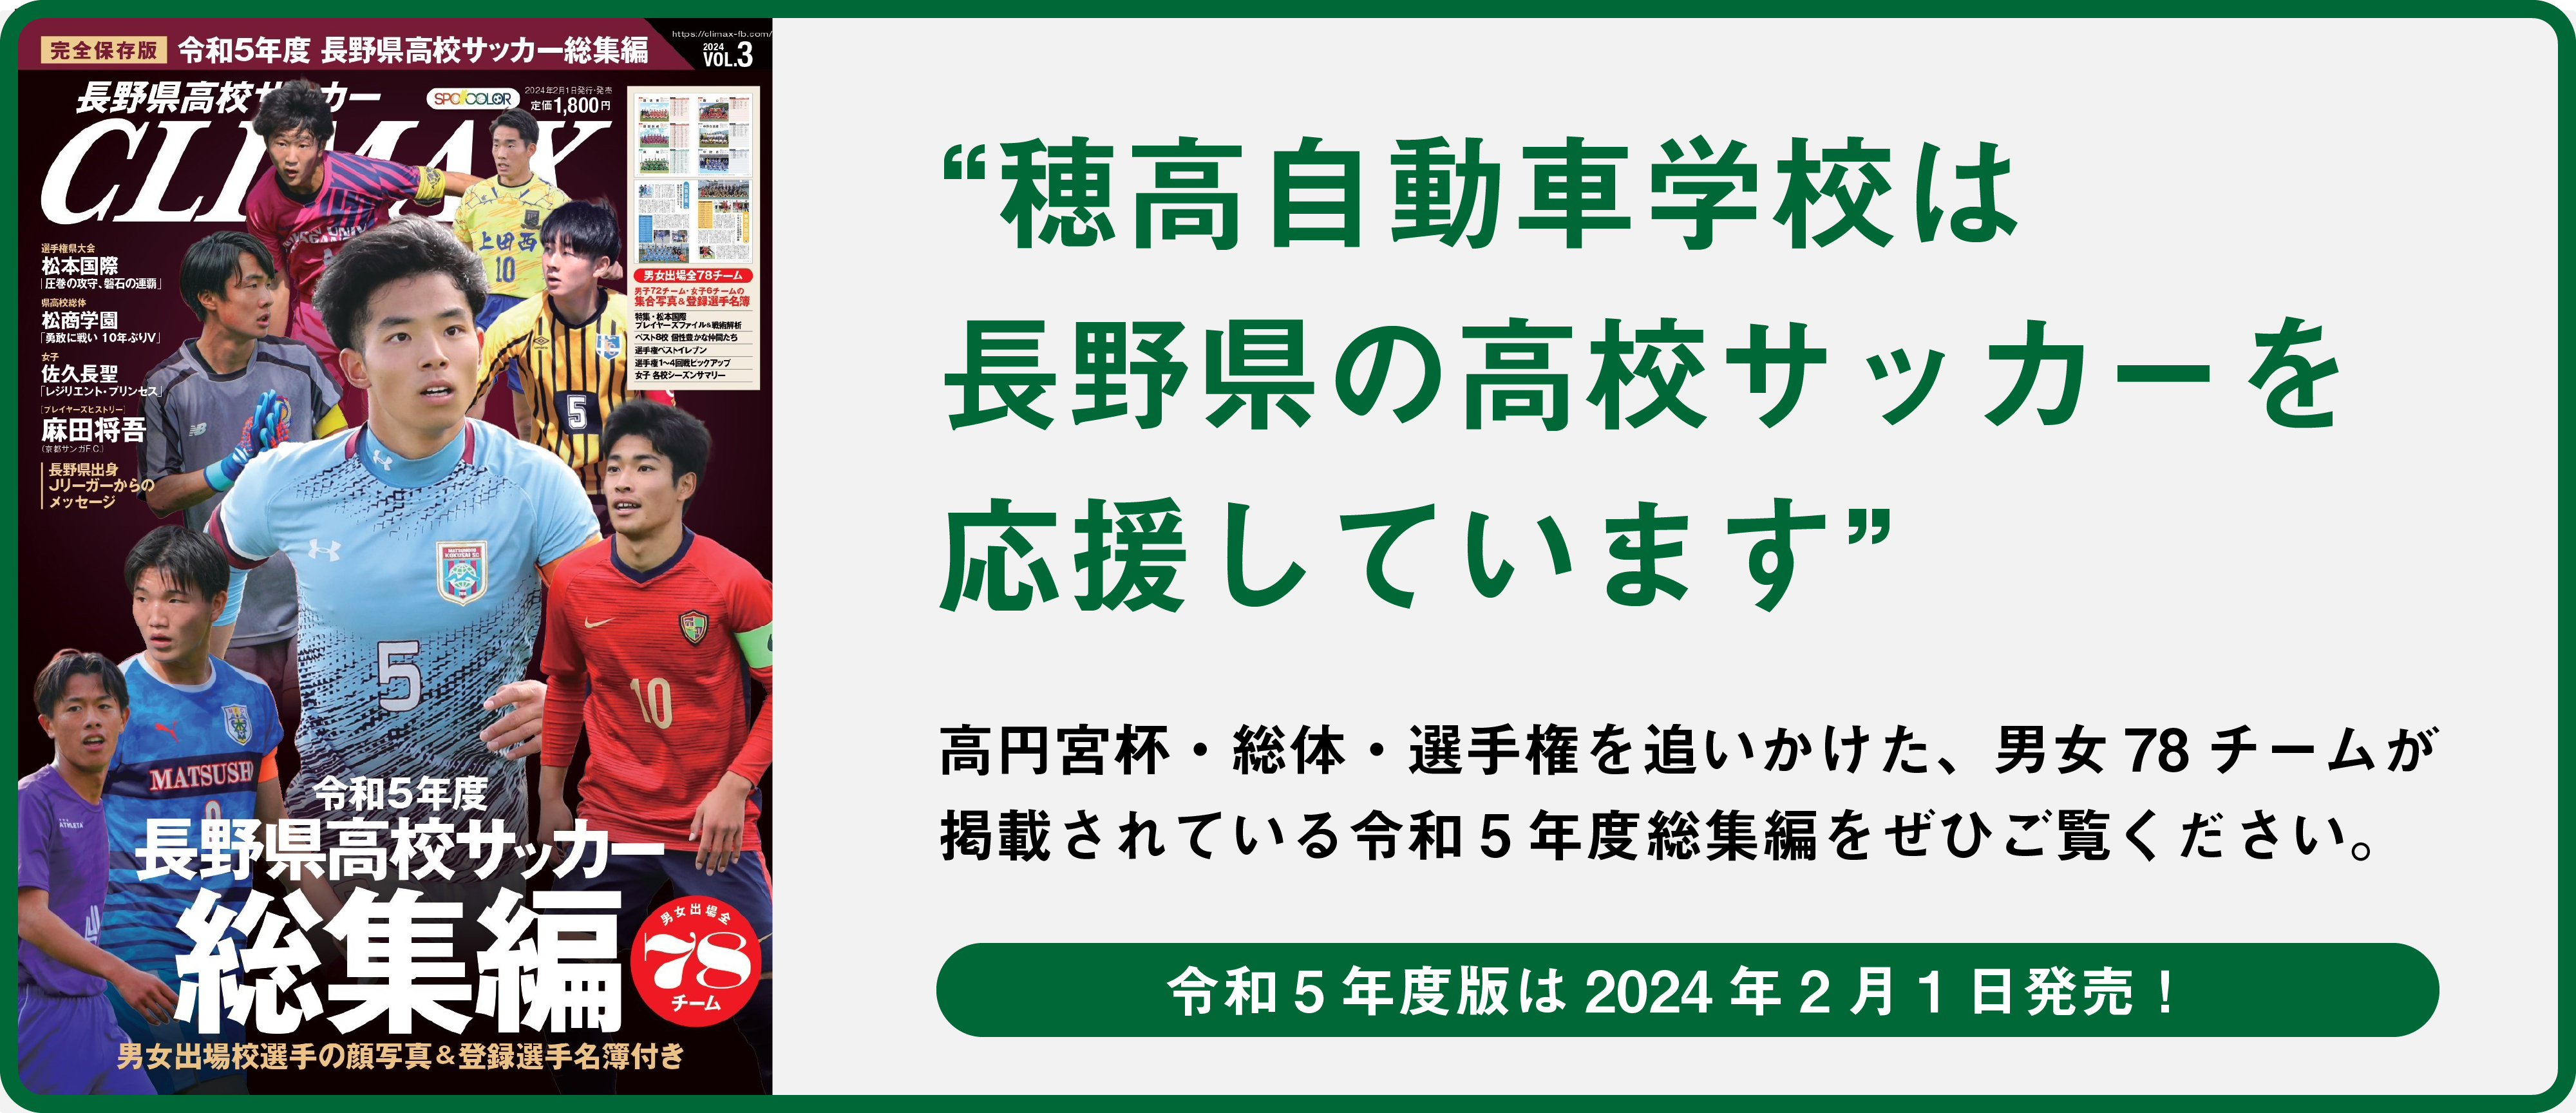 穂高自動車学校は長野県の高校サッカーを応援しています